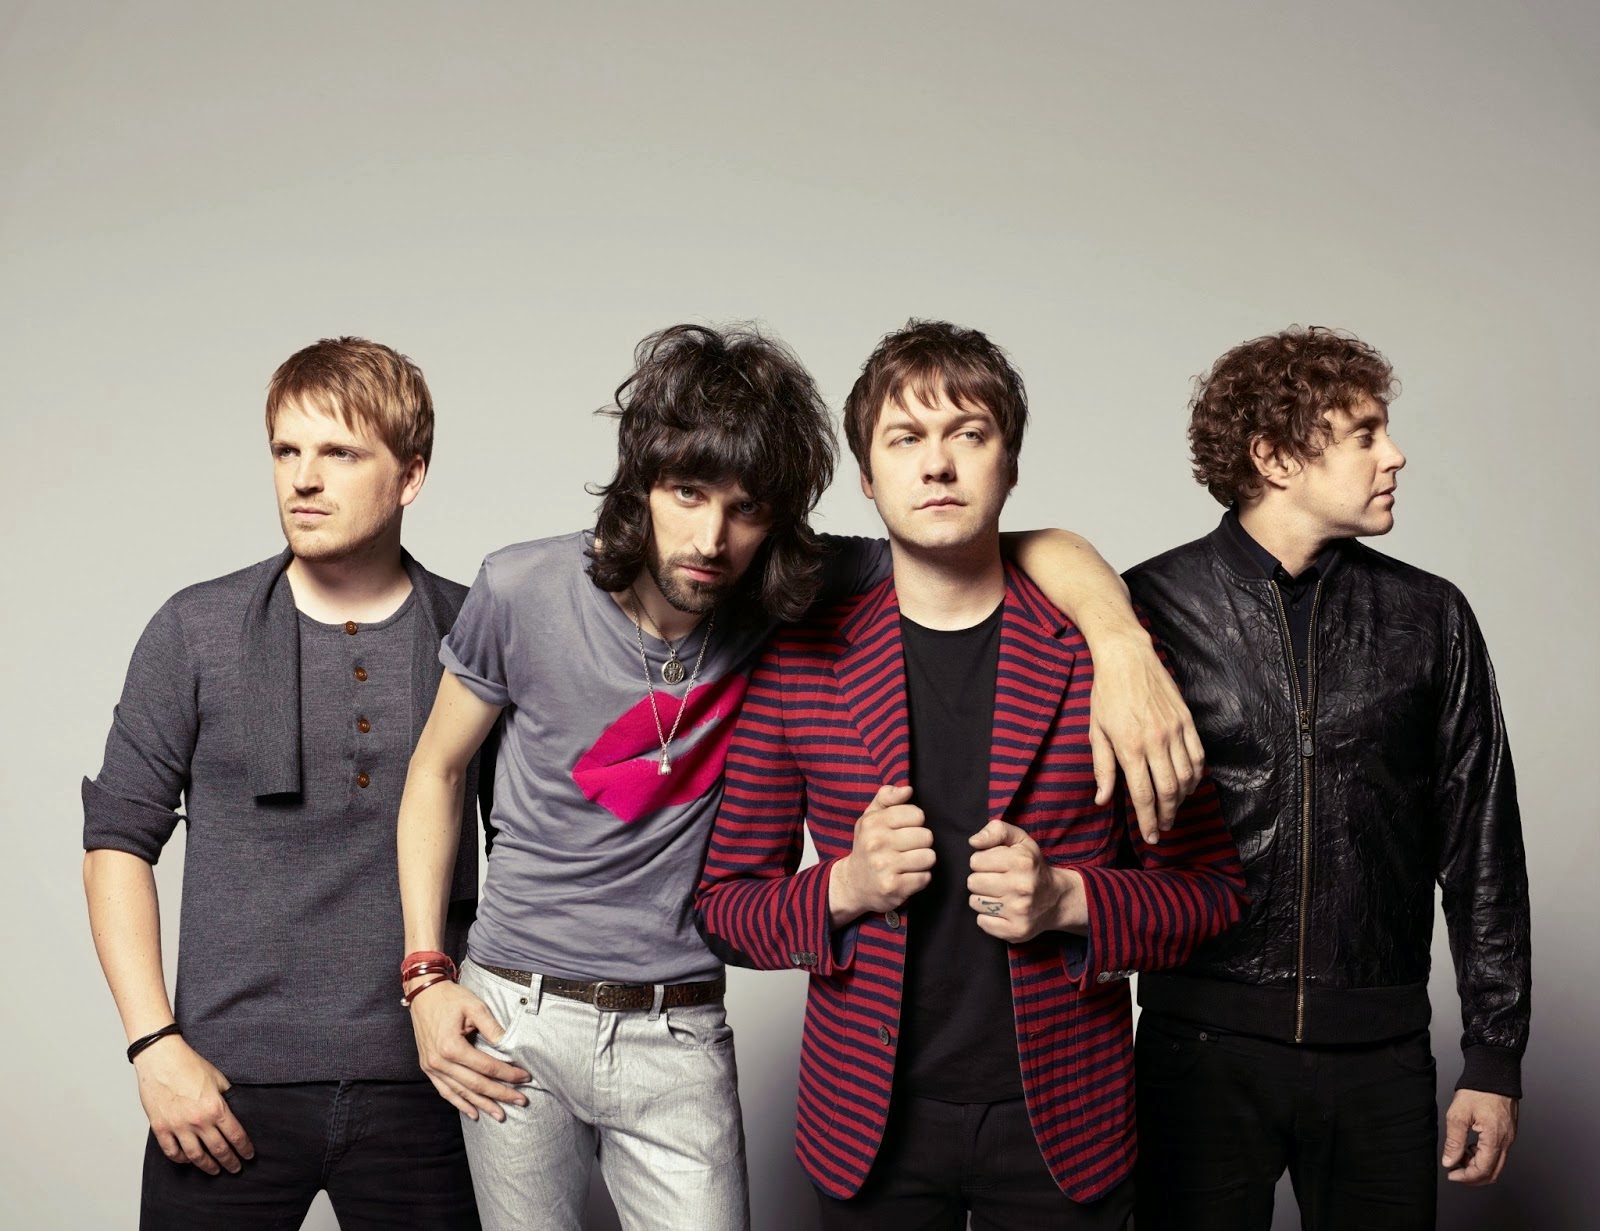 La banda Kasabian, alcanza el número 1 en ventas en Inglaterra con su "48:13"